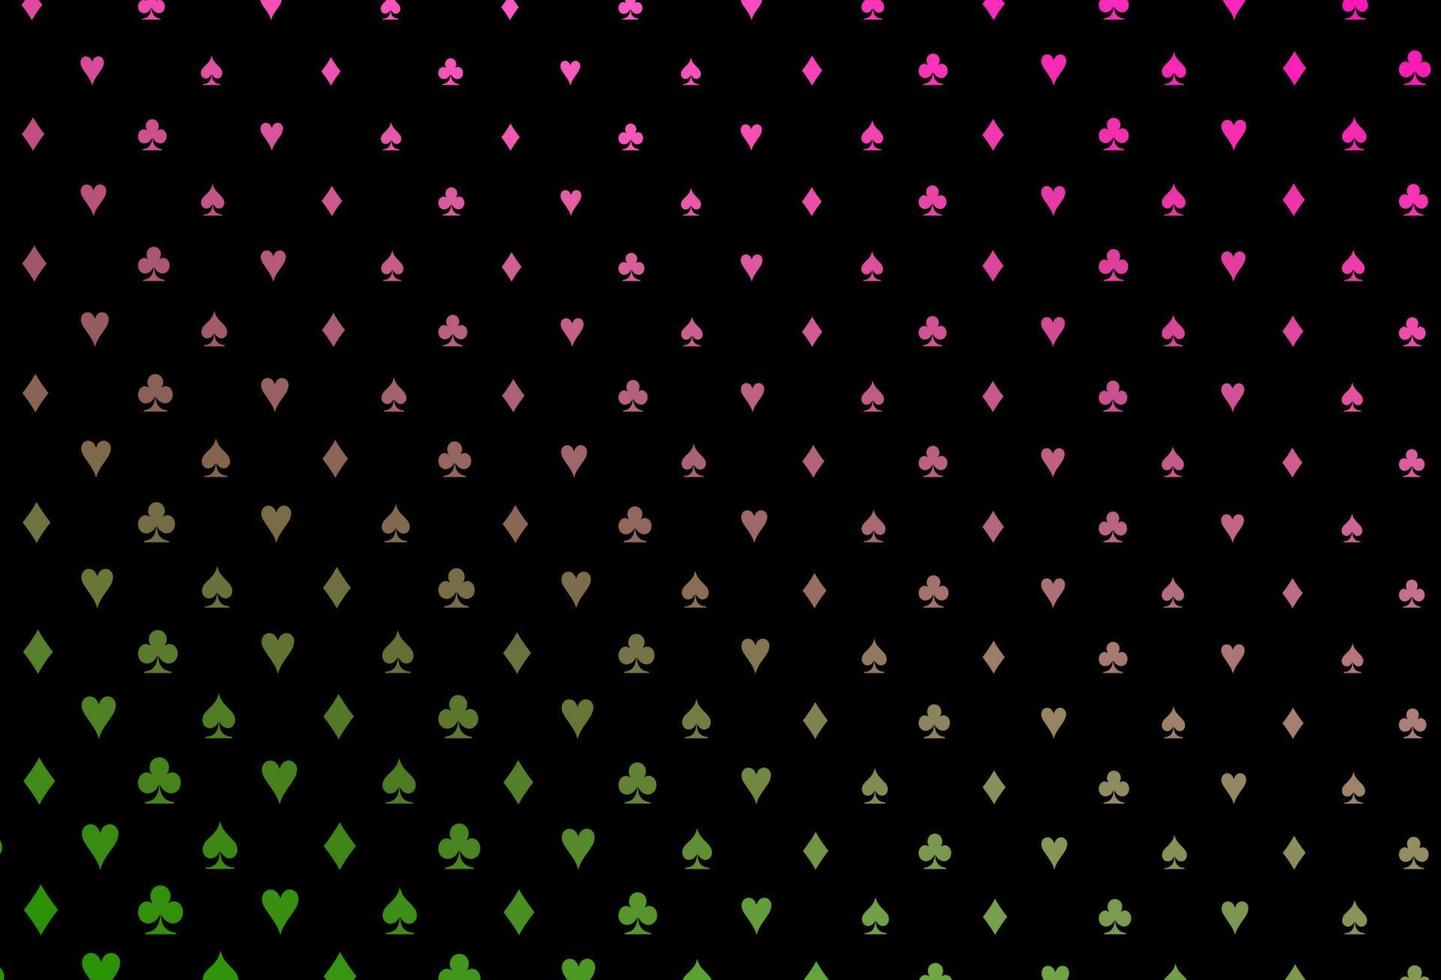 modelo de vetor rosa e verde escuro com símbolos de pôquer.